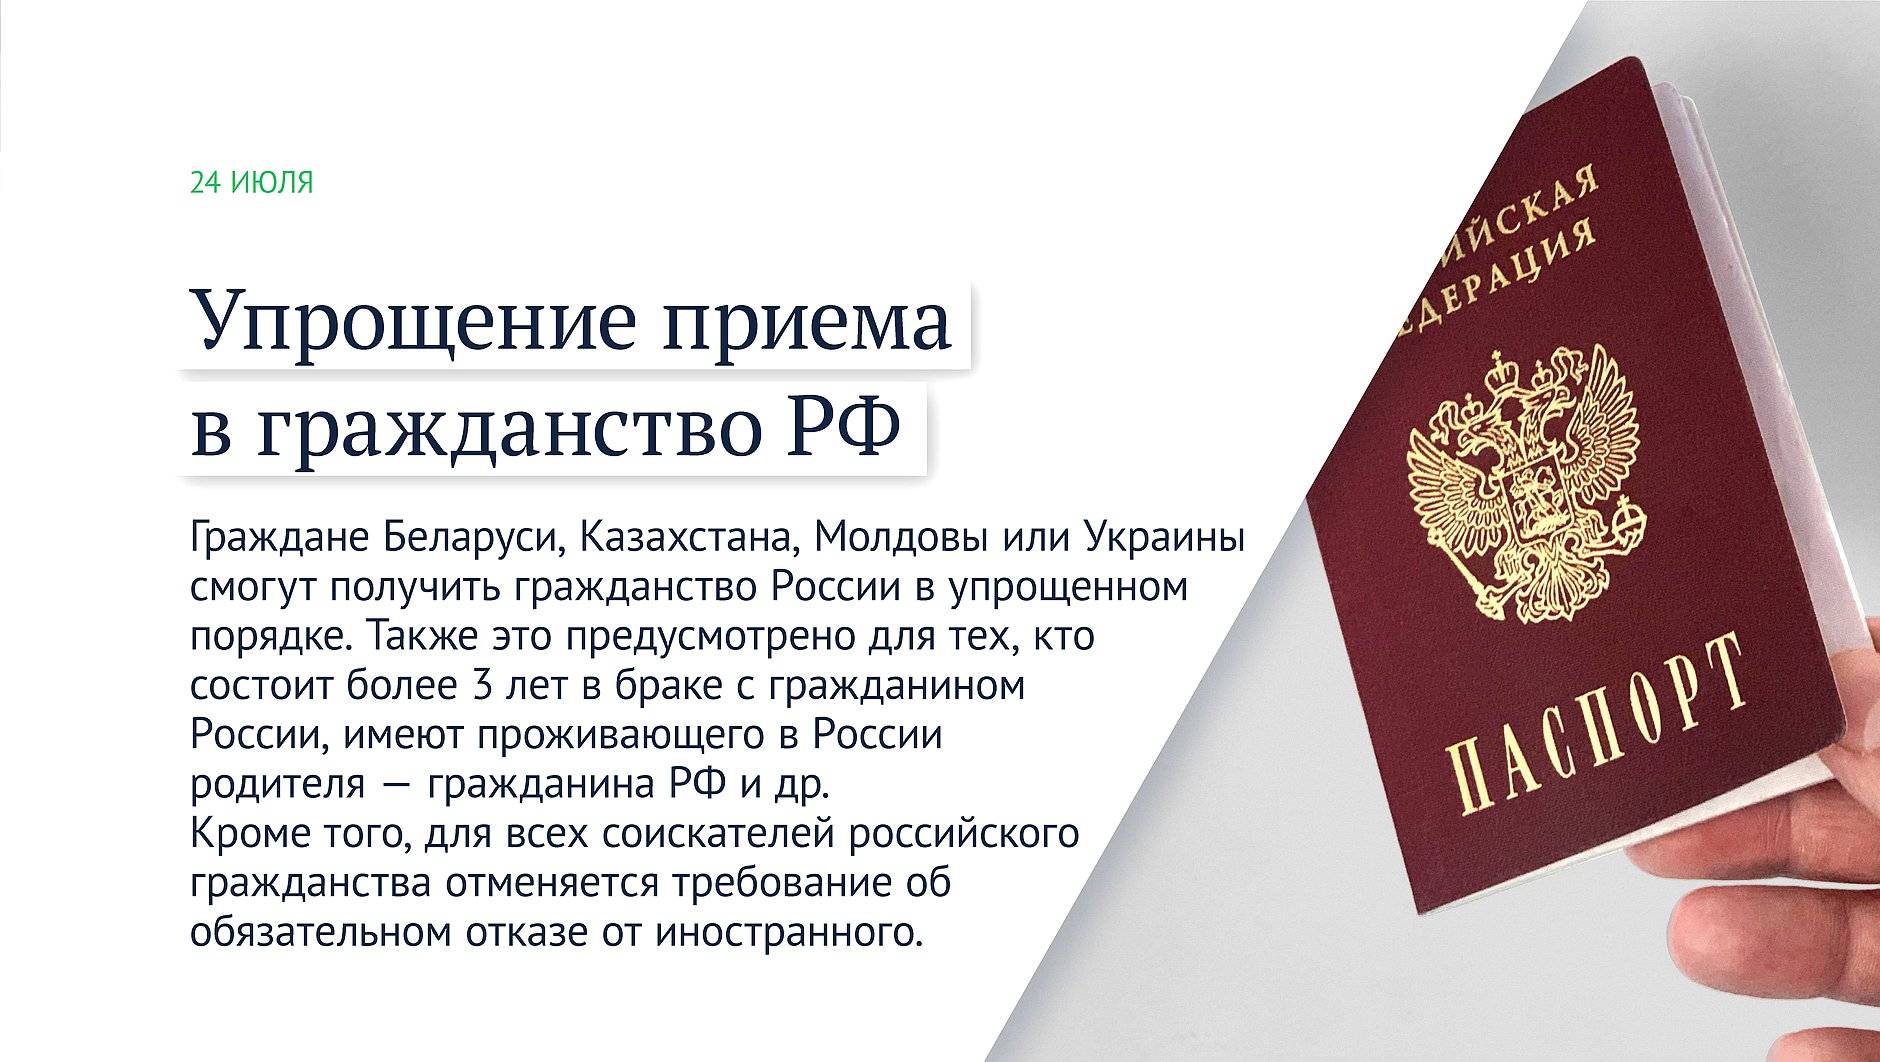 Гражданство рф для граждан украины . гражданства рф украинцам.